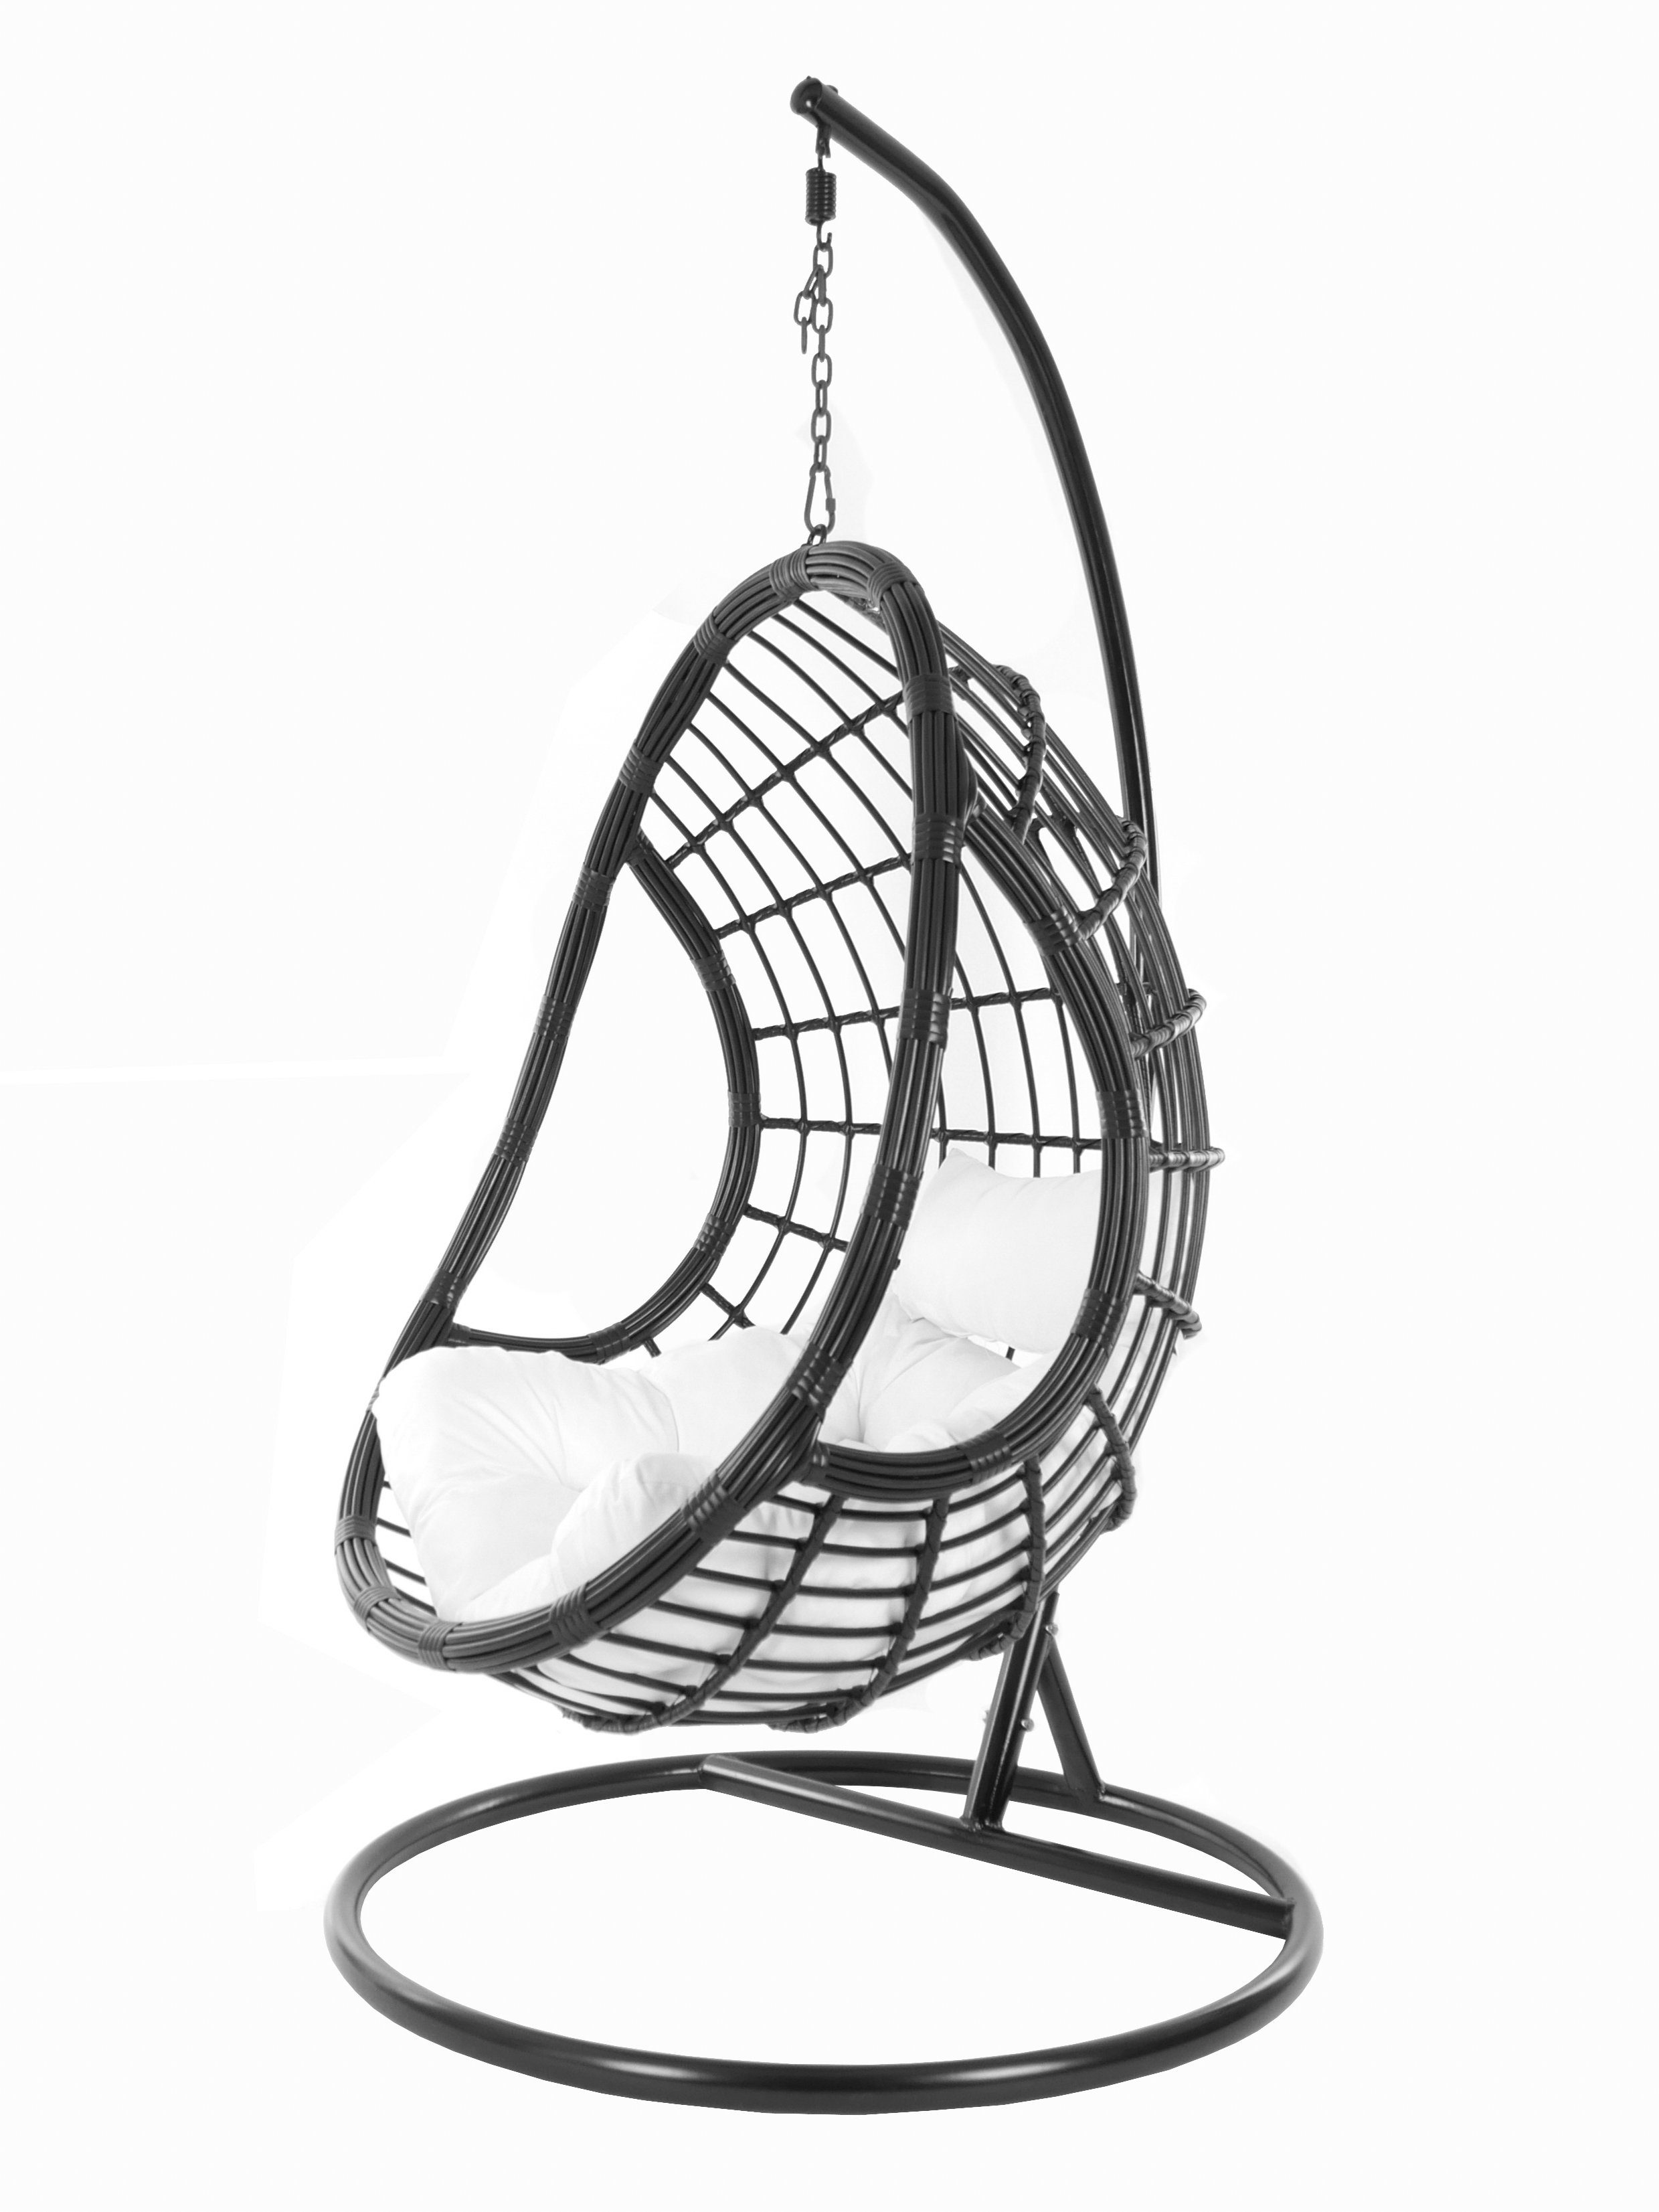 KIDEO Hängesessel PALMANOVA Schwebesessel, schwarz, Gestell Design Swing und snow) black, Chair, Kissen, edles mit Loungemöbel, Hängesessel weiß (1000